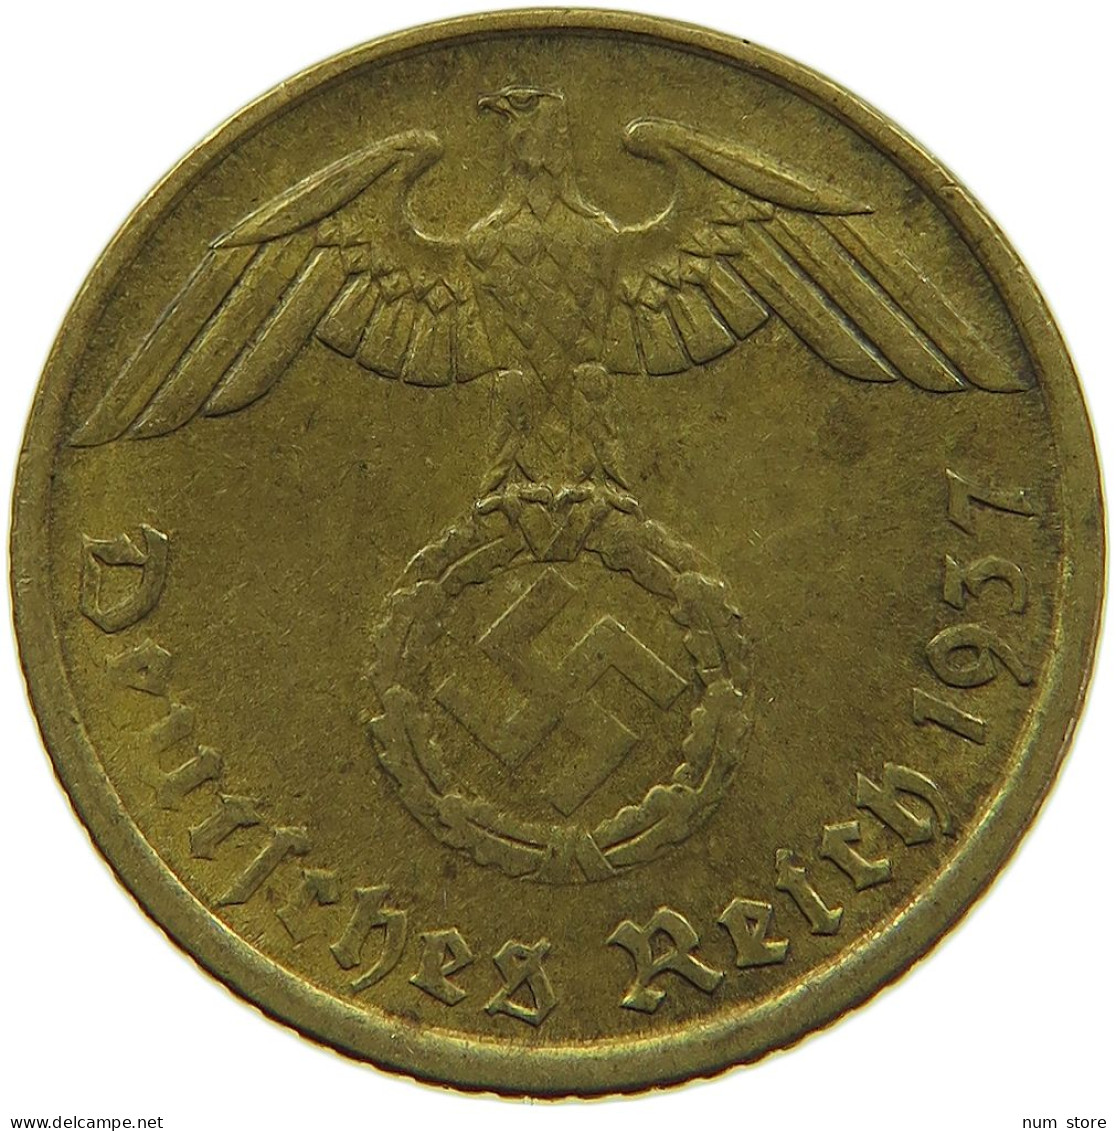 GERMANY 5 REICHSPFENNIG 1937 A #s091 0621 - 5 Reichspfennig